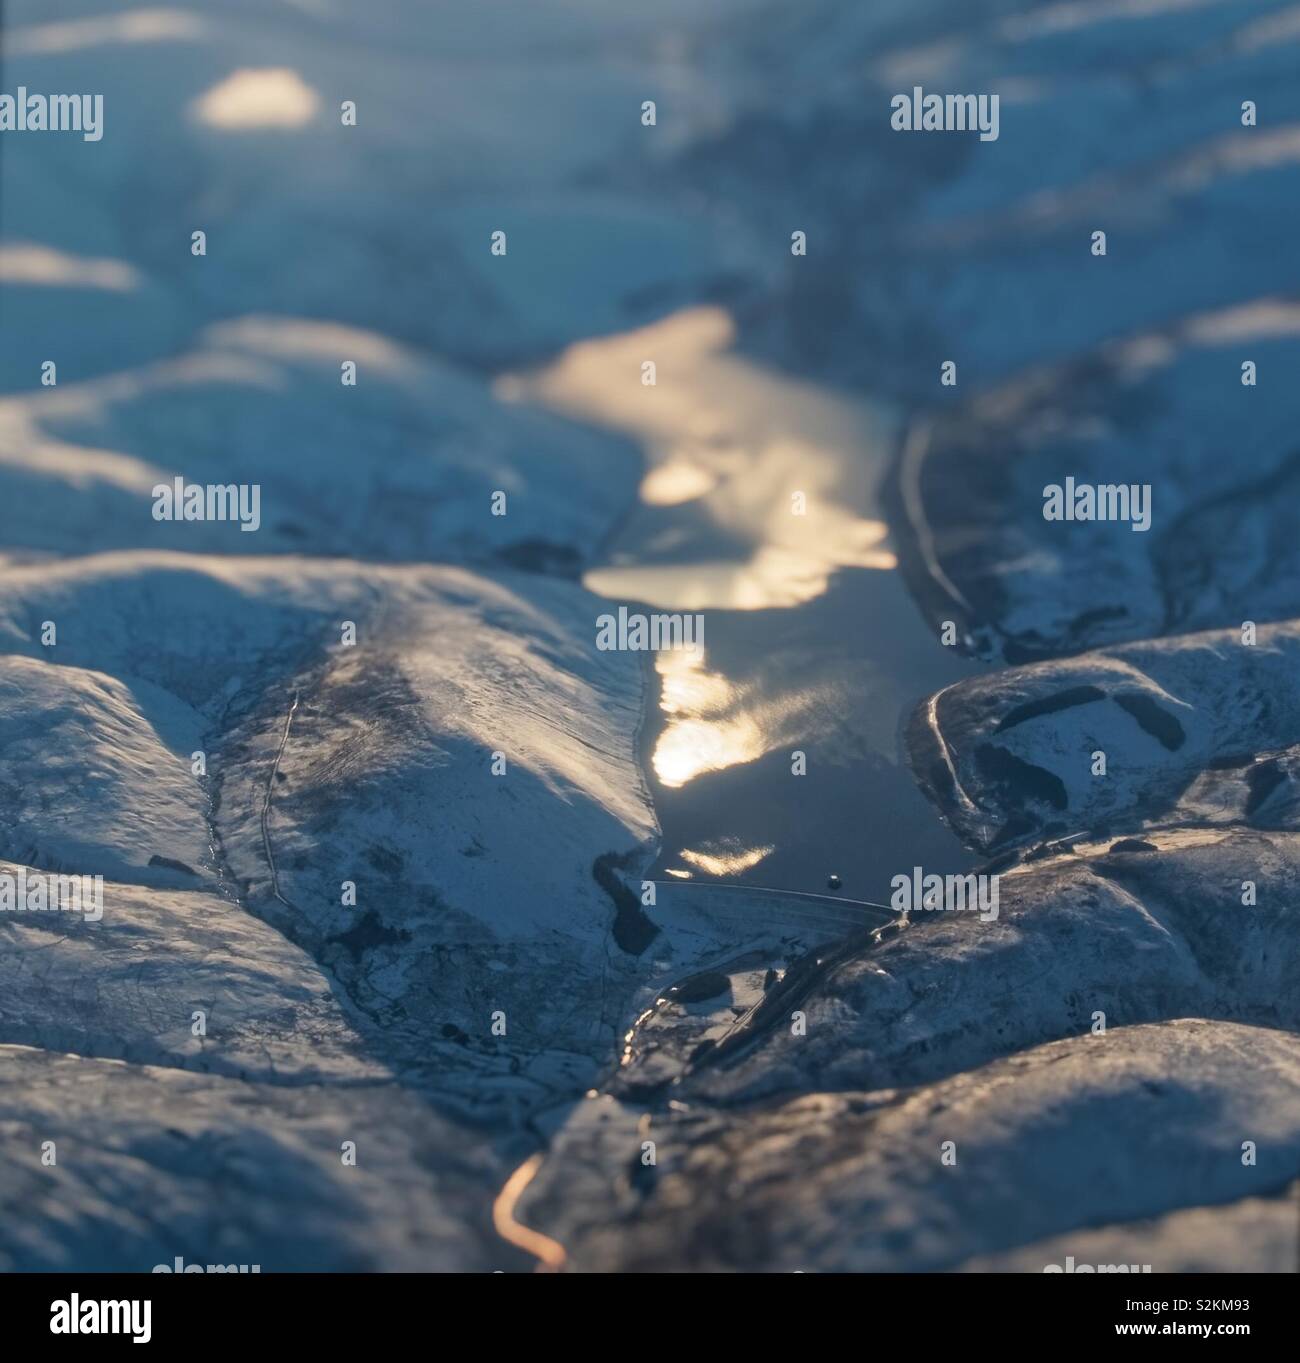 Tilt Shift miniatura del serbatoio scozzese entro la neve sulle colline coperte Foto Stock